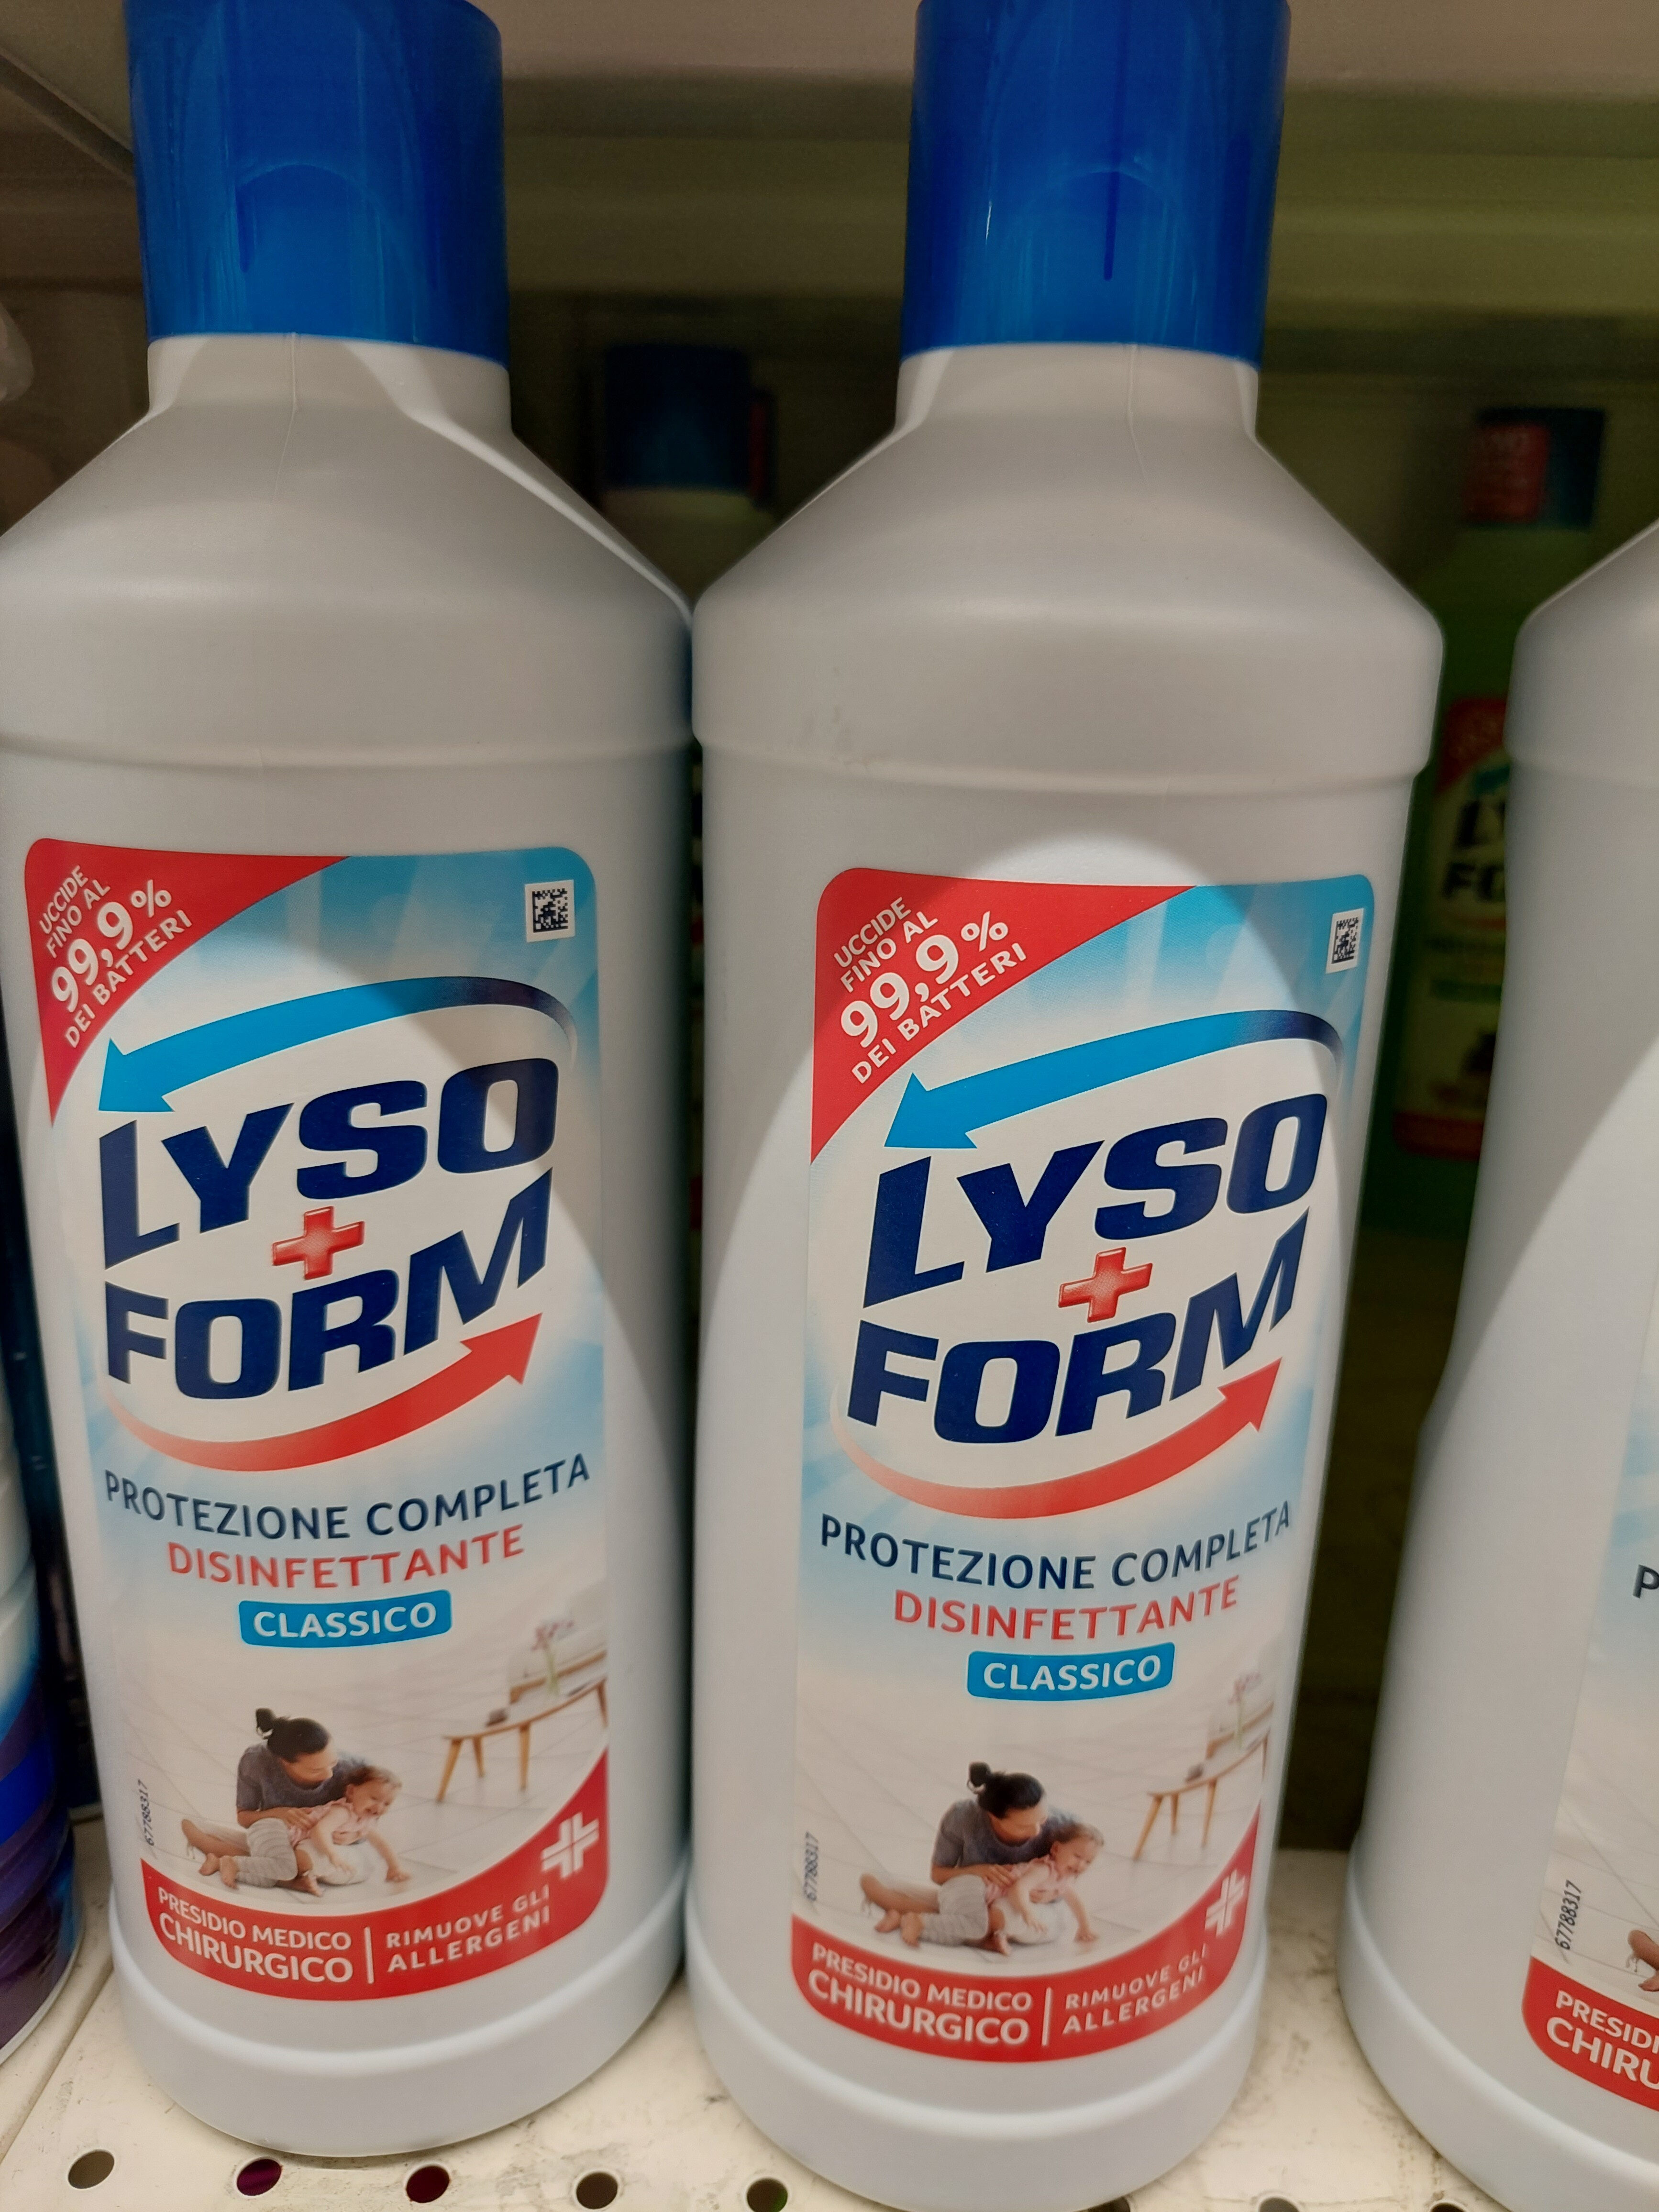 lysoform protezione completa disinfettante classico - Product - it